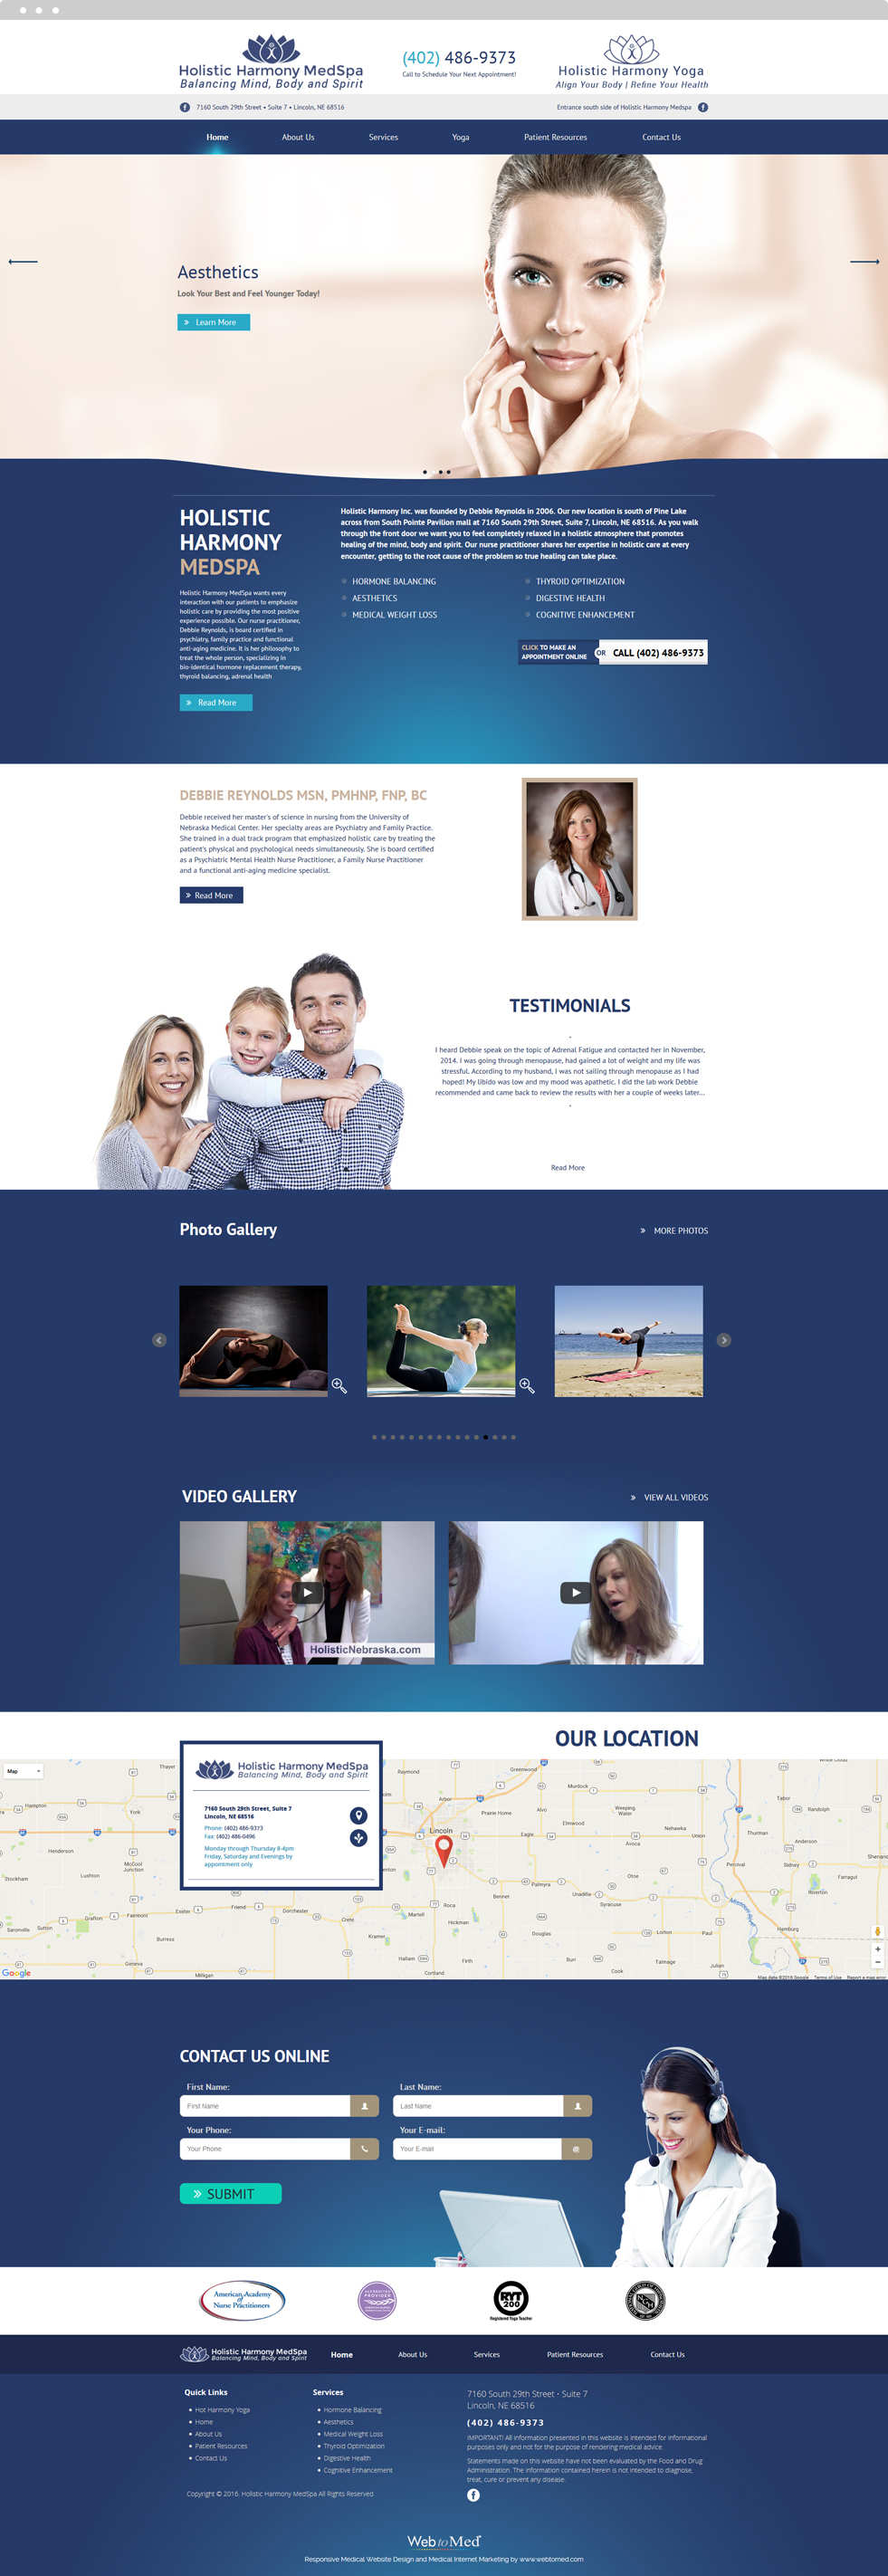 Med Spa Website Design - Holistic Harmony MedSpa - Homepage